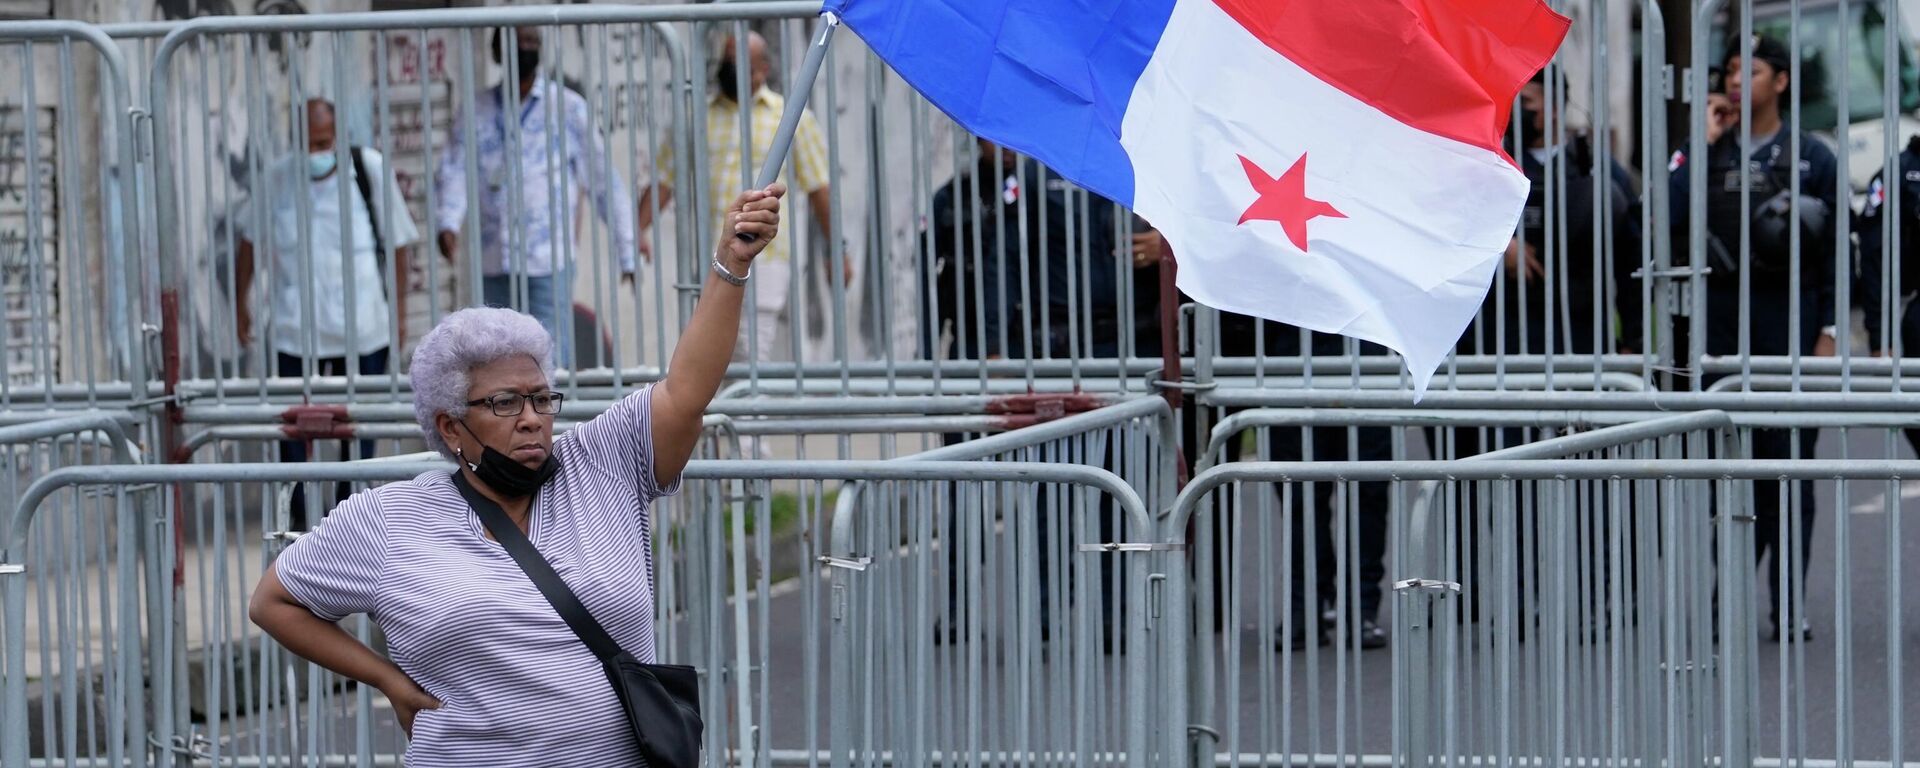 Una mujer sostiene una bandera de Panamá durante las protestas contra el Gobierno de Laurentino Cortizo en 2022 - Sputnik Mundo, 1920, 22.07.2022